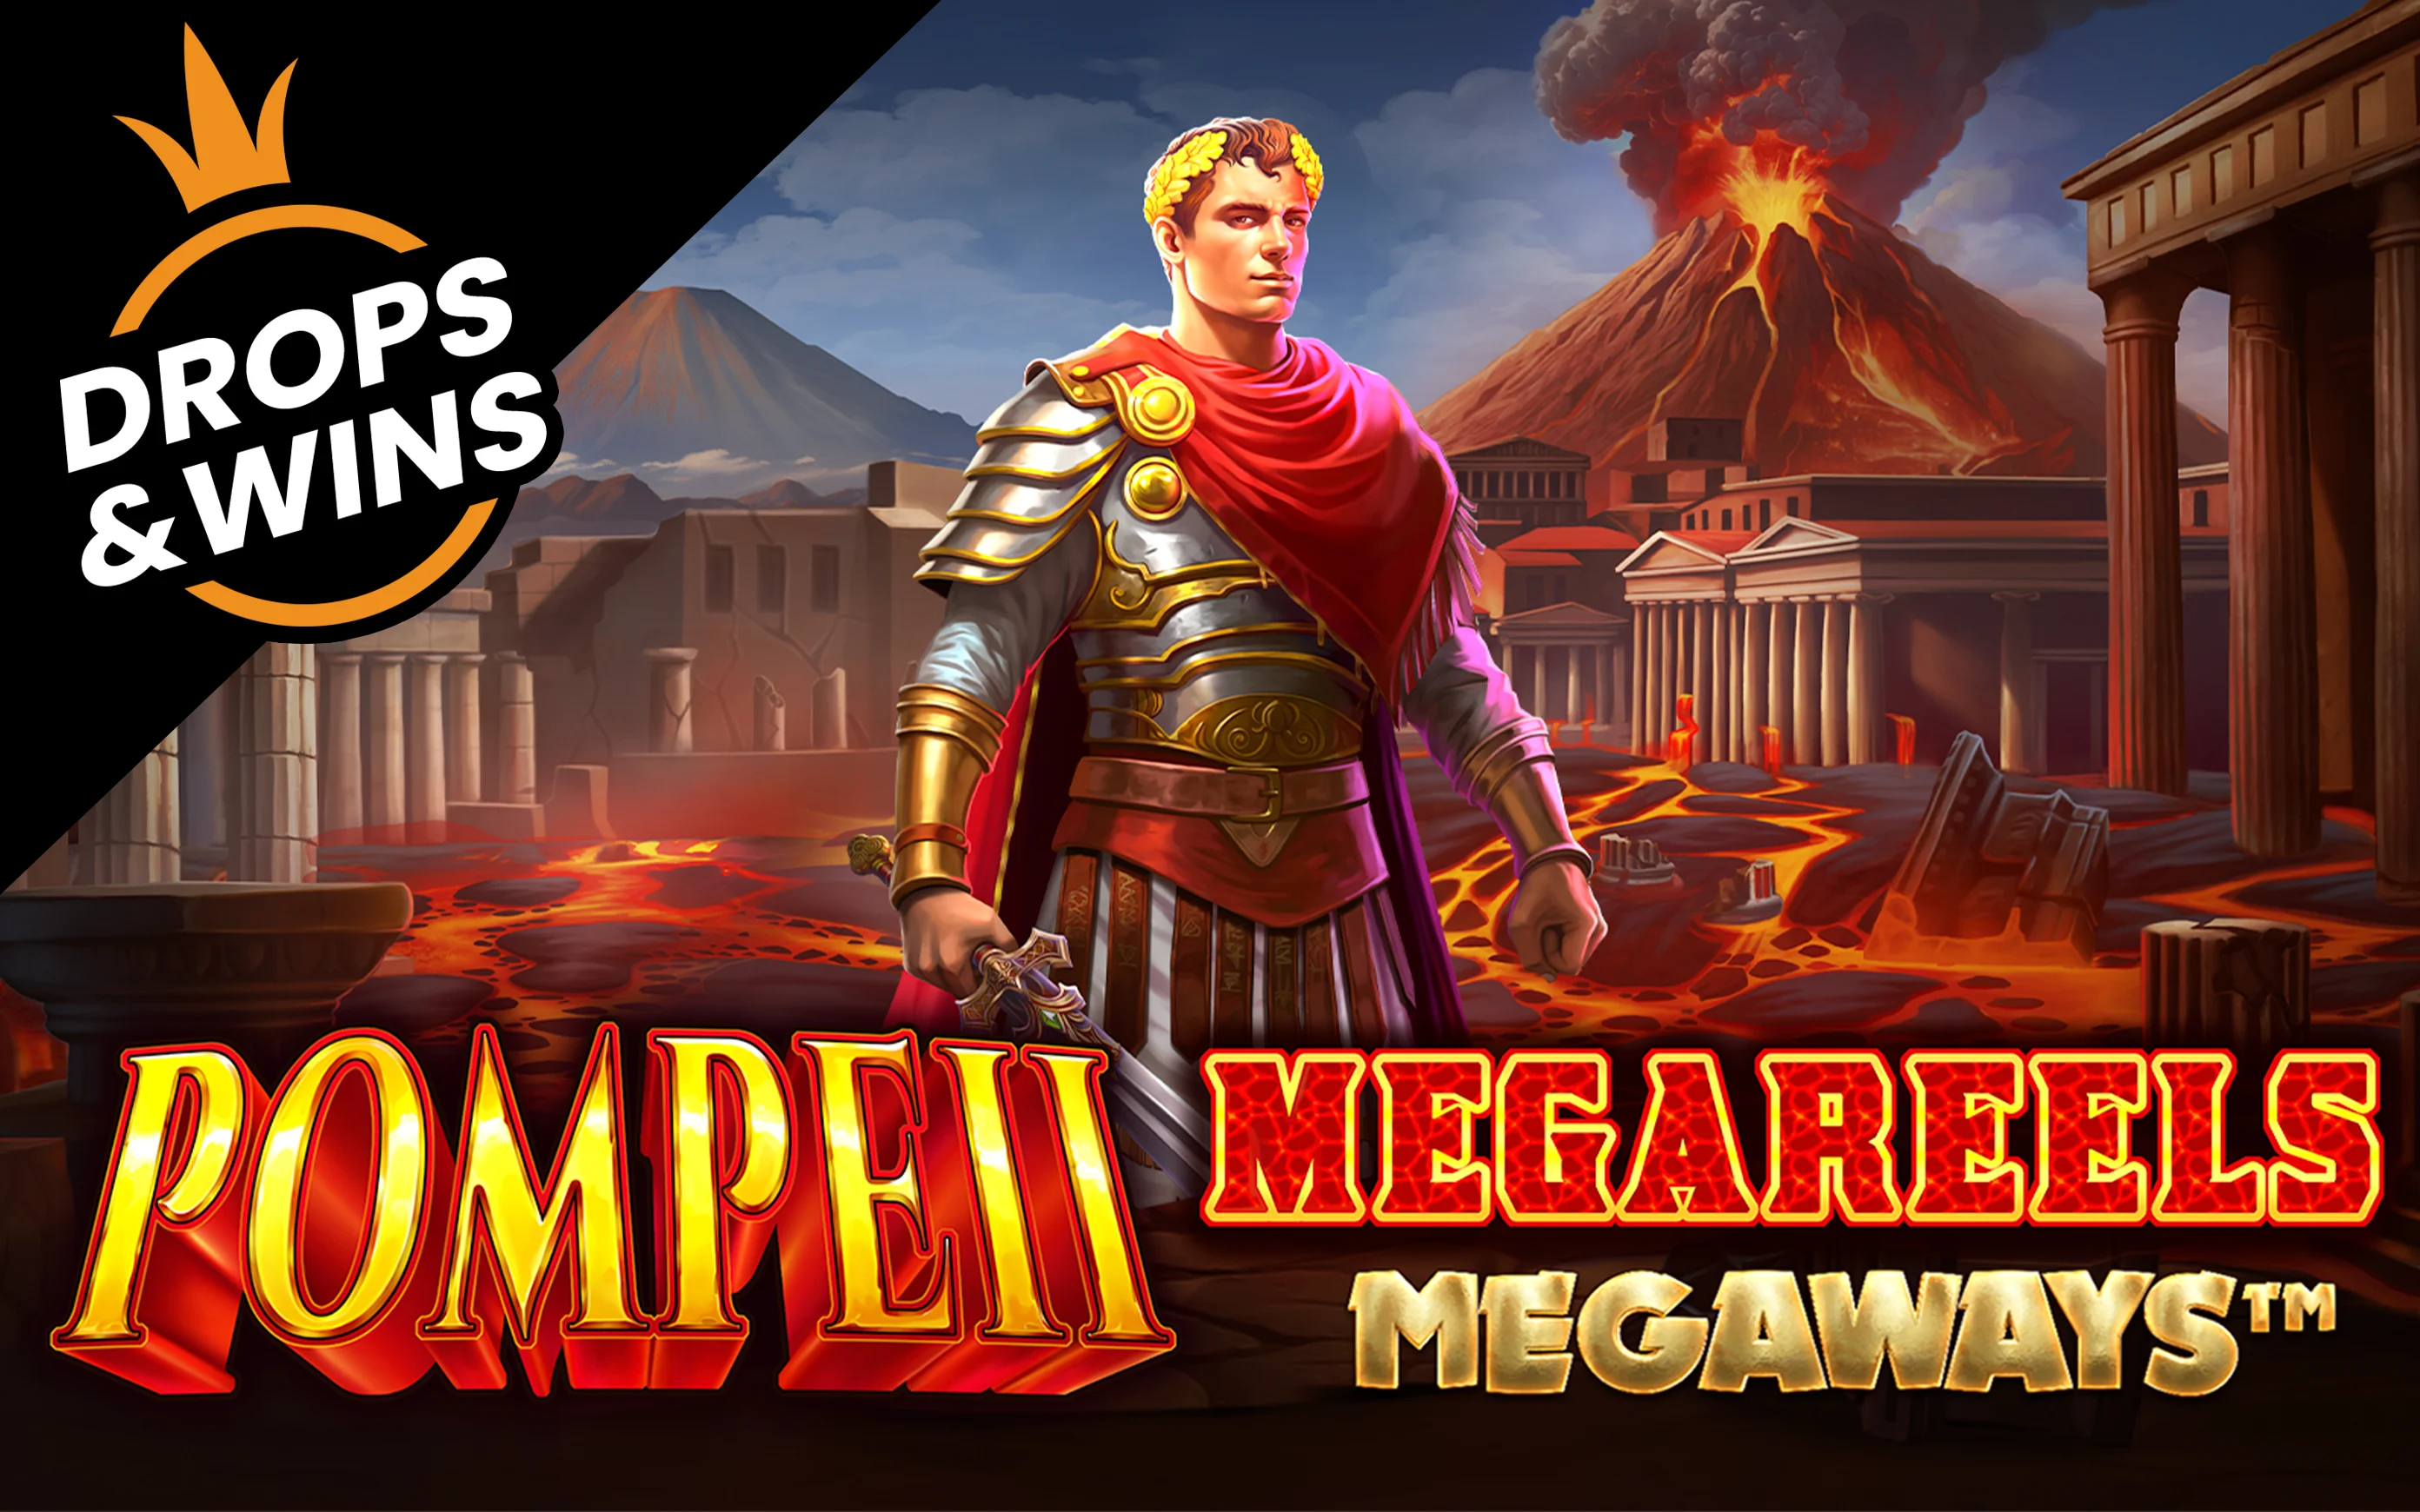 Jouer à Pompeii Megareels Megaways™ sur le casino en ligne Starcasino.be